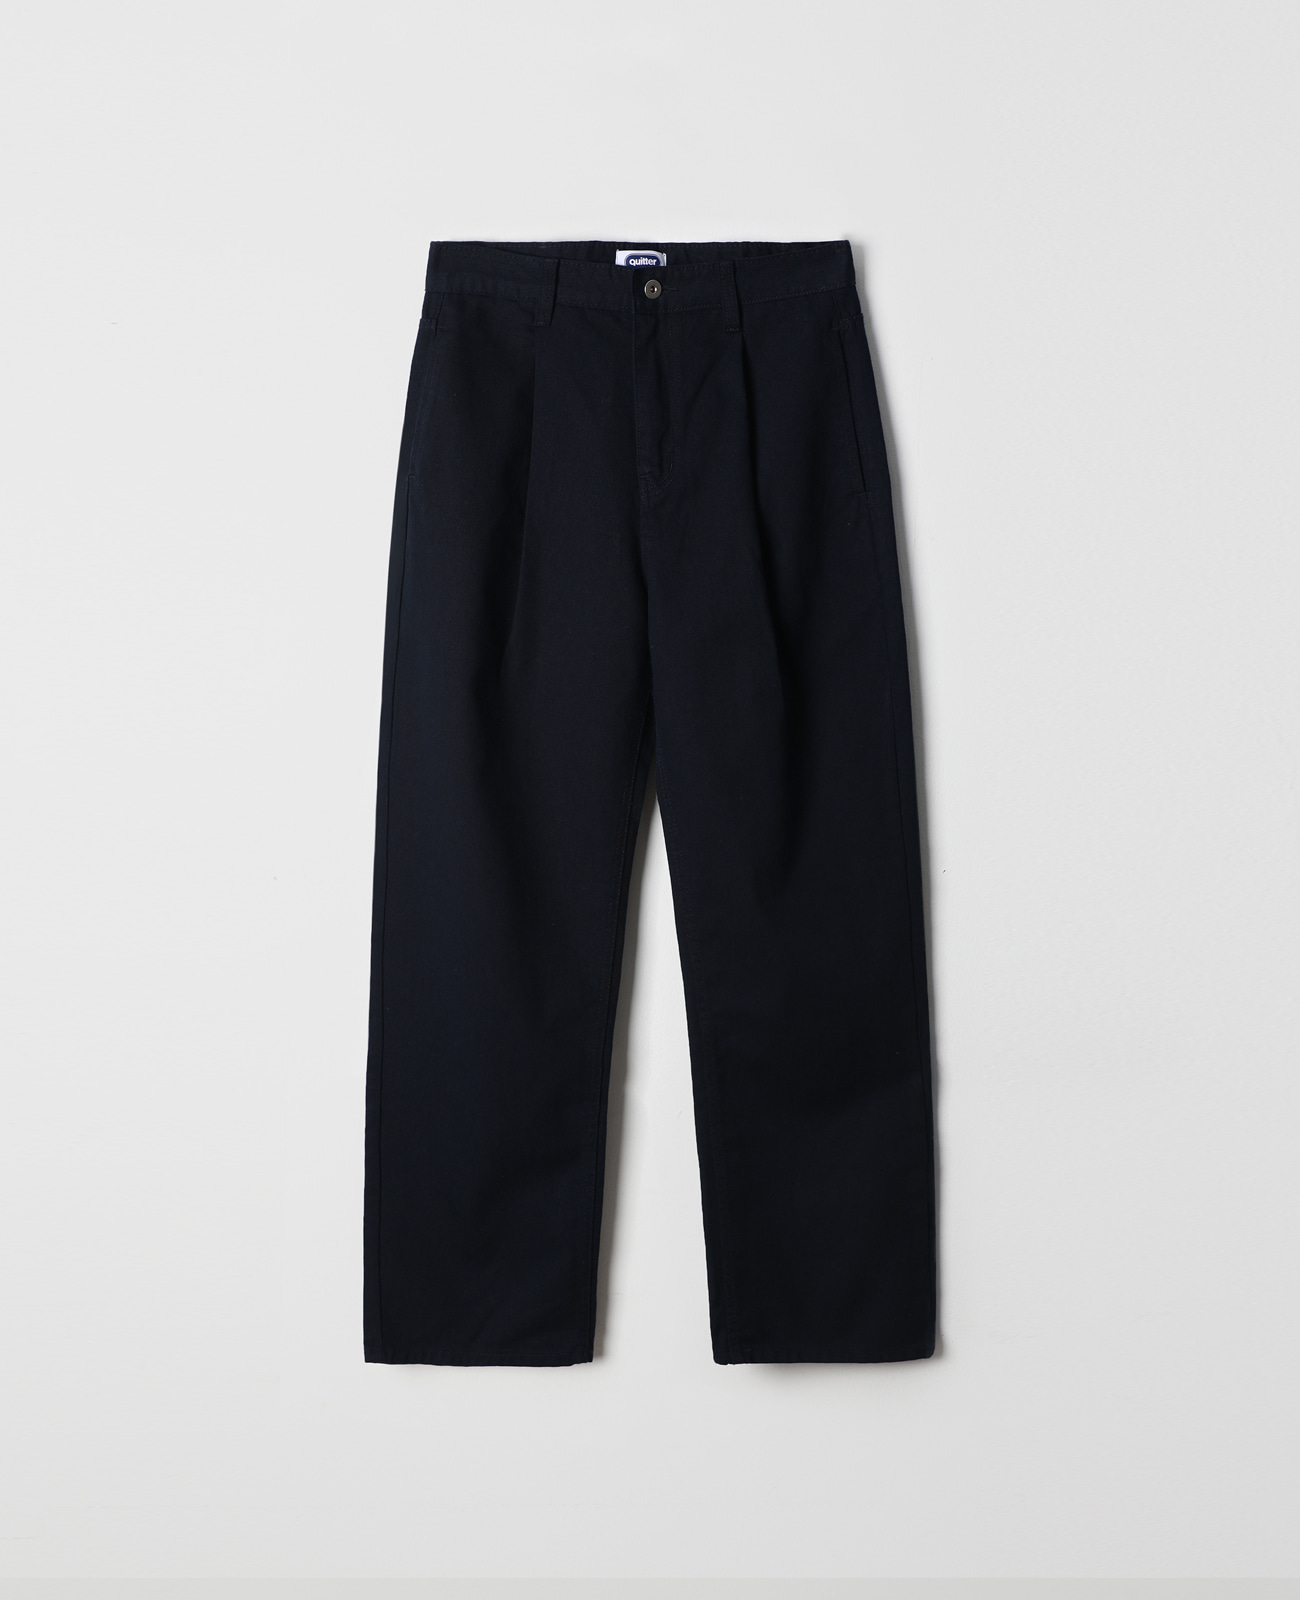 cotton straight pants (navy)